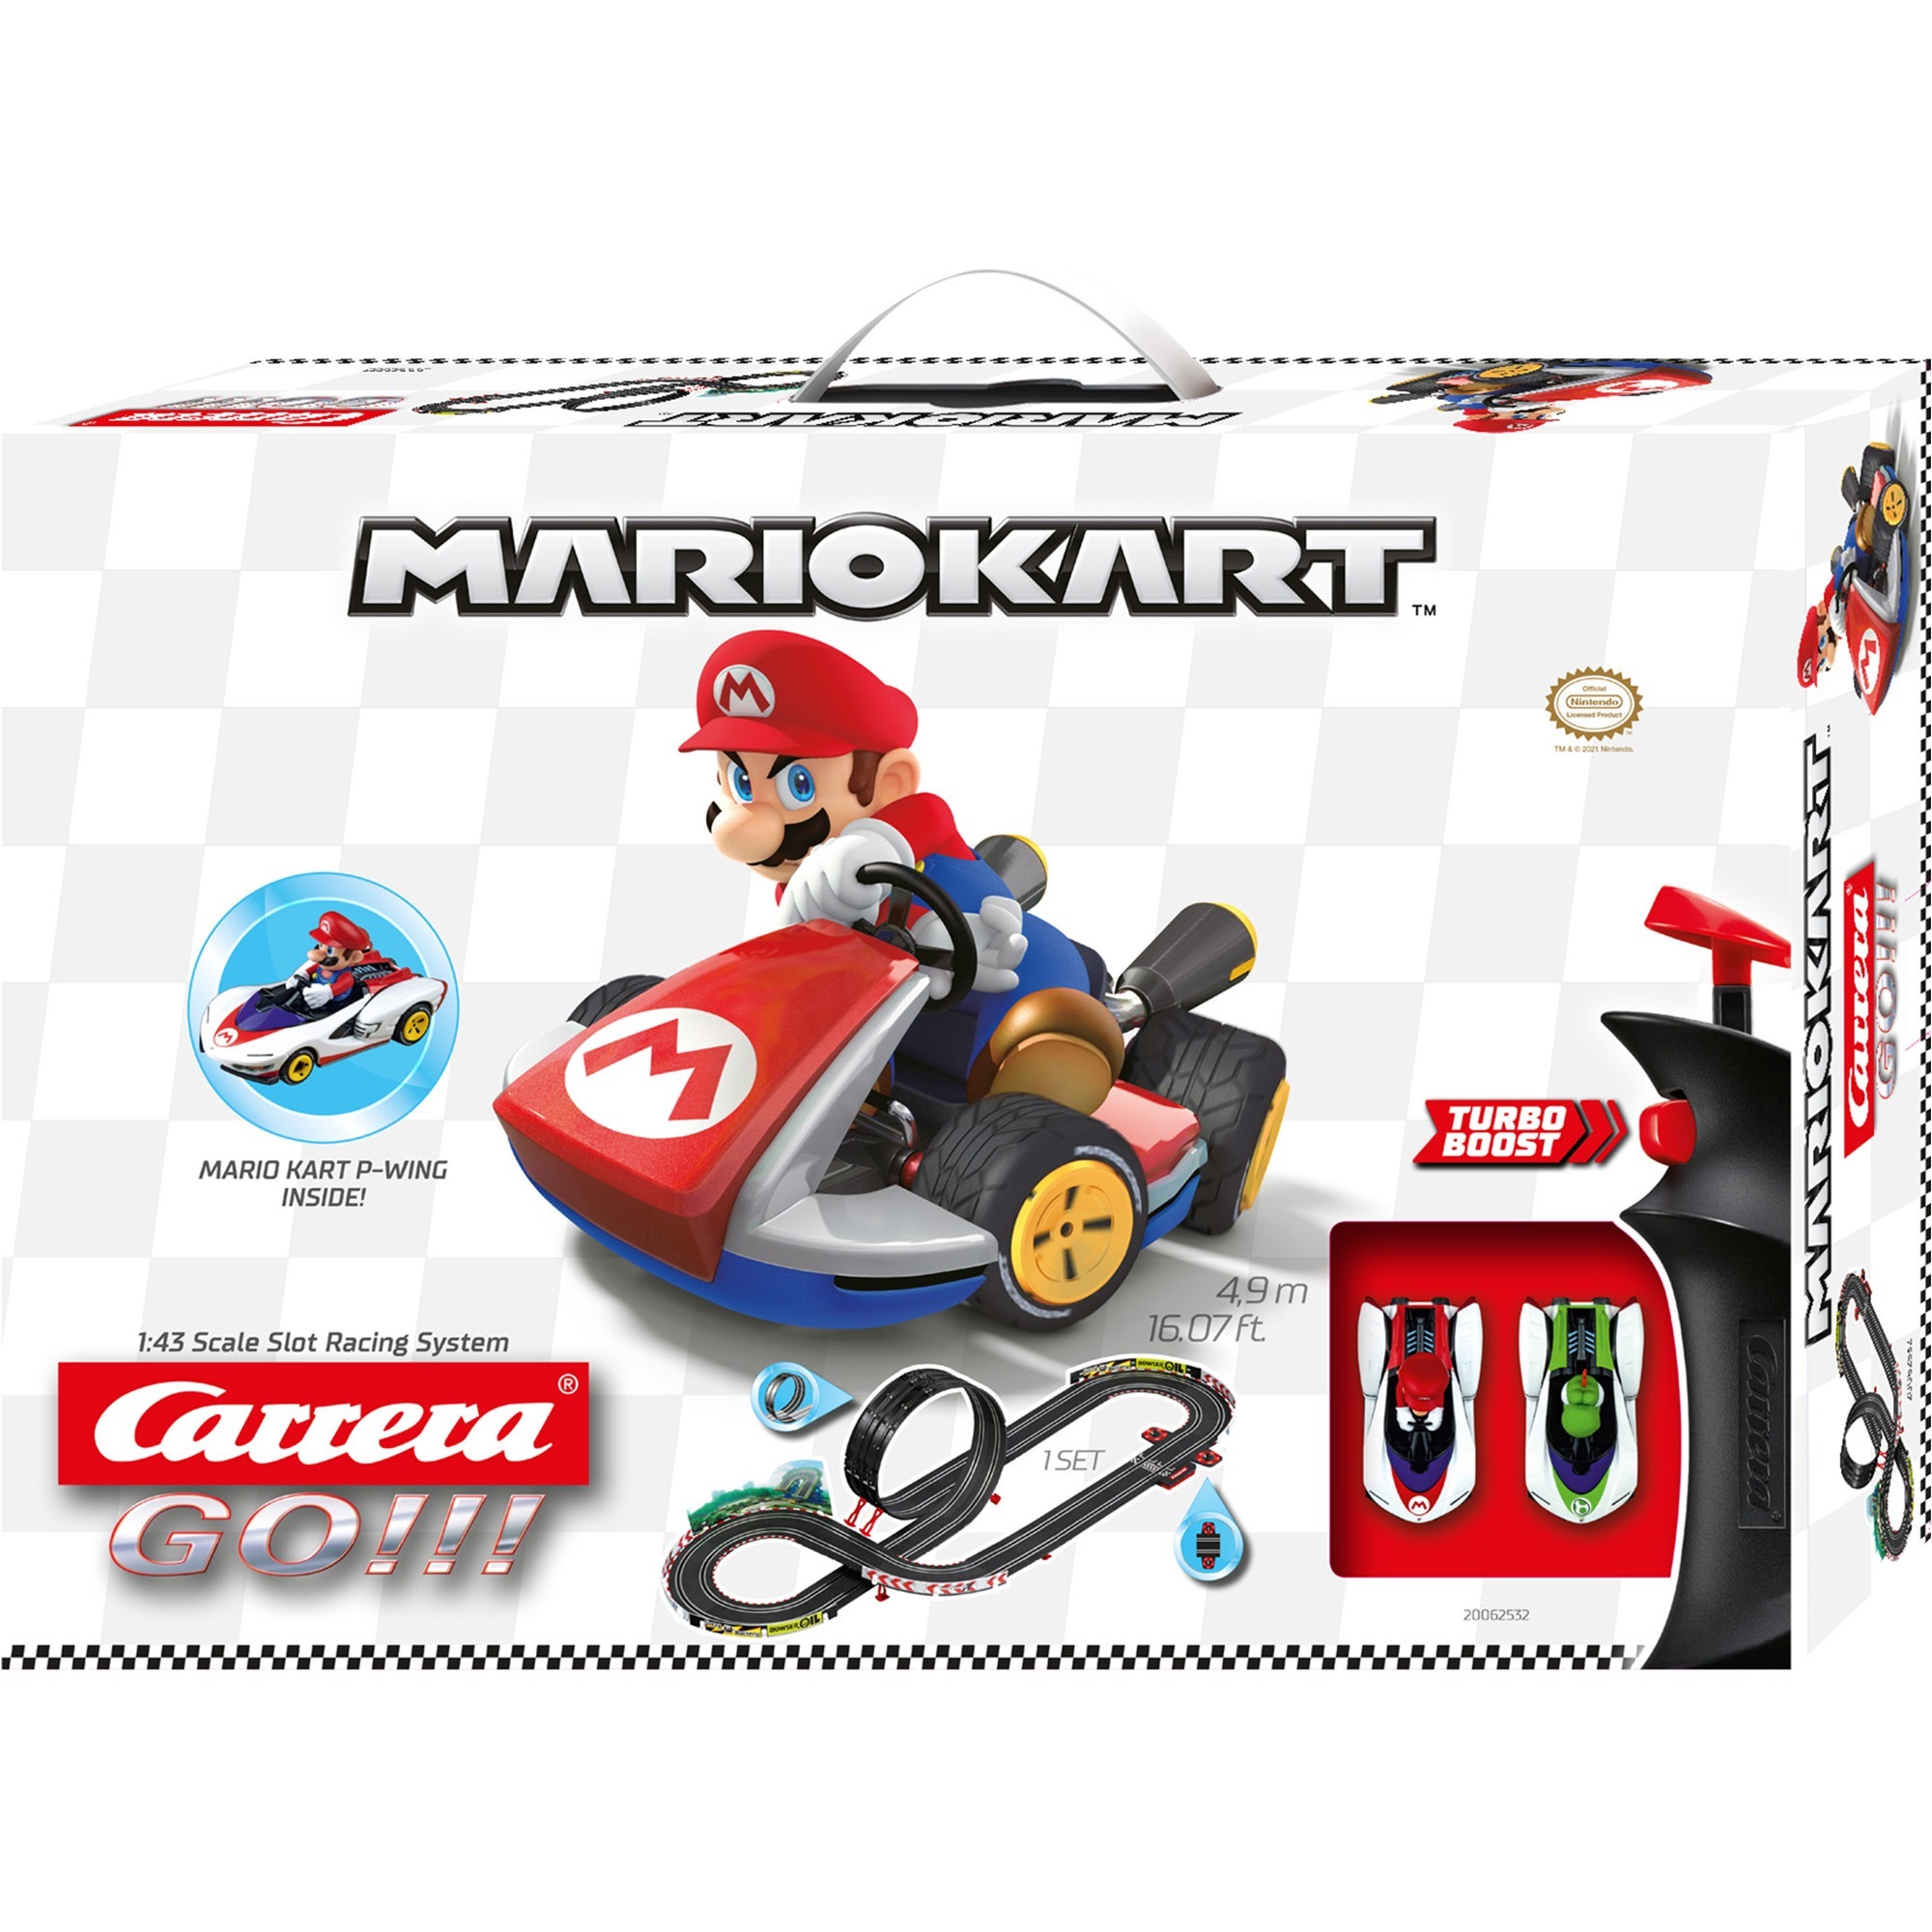 Image of Alternate - GO!!! Nintendo Mario Kart - P-Wing, Rennbahn online einkaufen bei Alternate